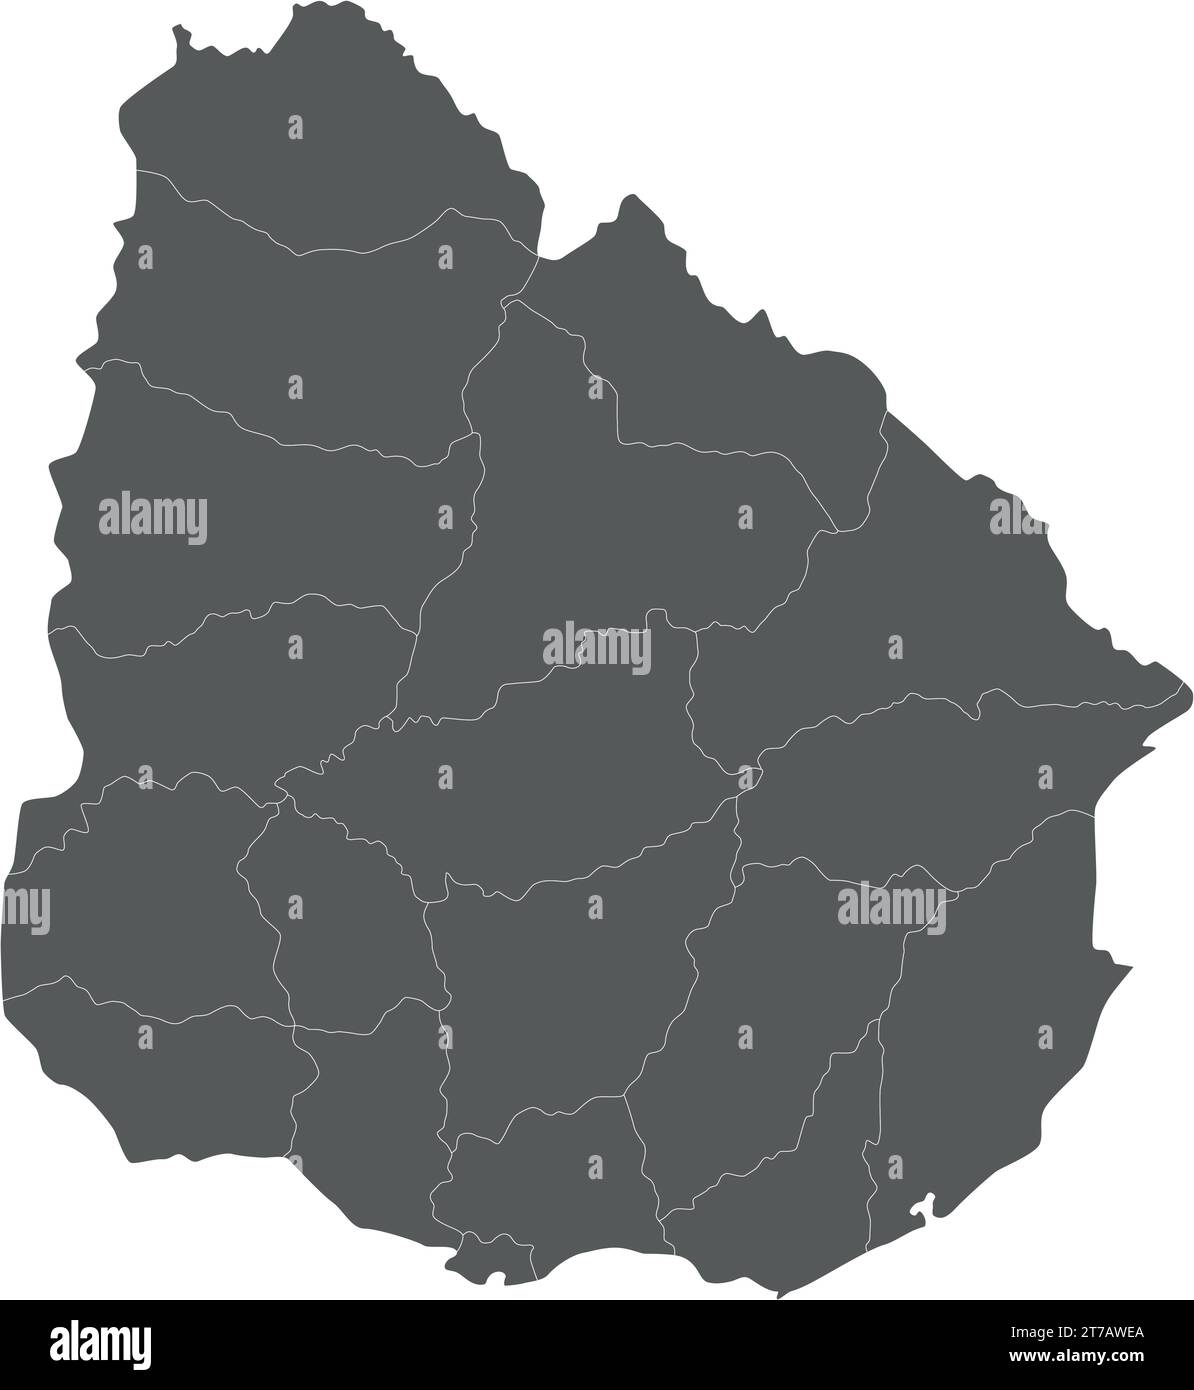 Mappa vettoriale vuota dell'Uruguay con dipartimenti e divisioni amministrative. Livelli modificabili e chiaramente etichettati. Illustrazione Vettoriale